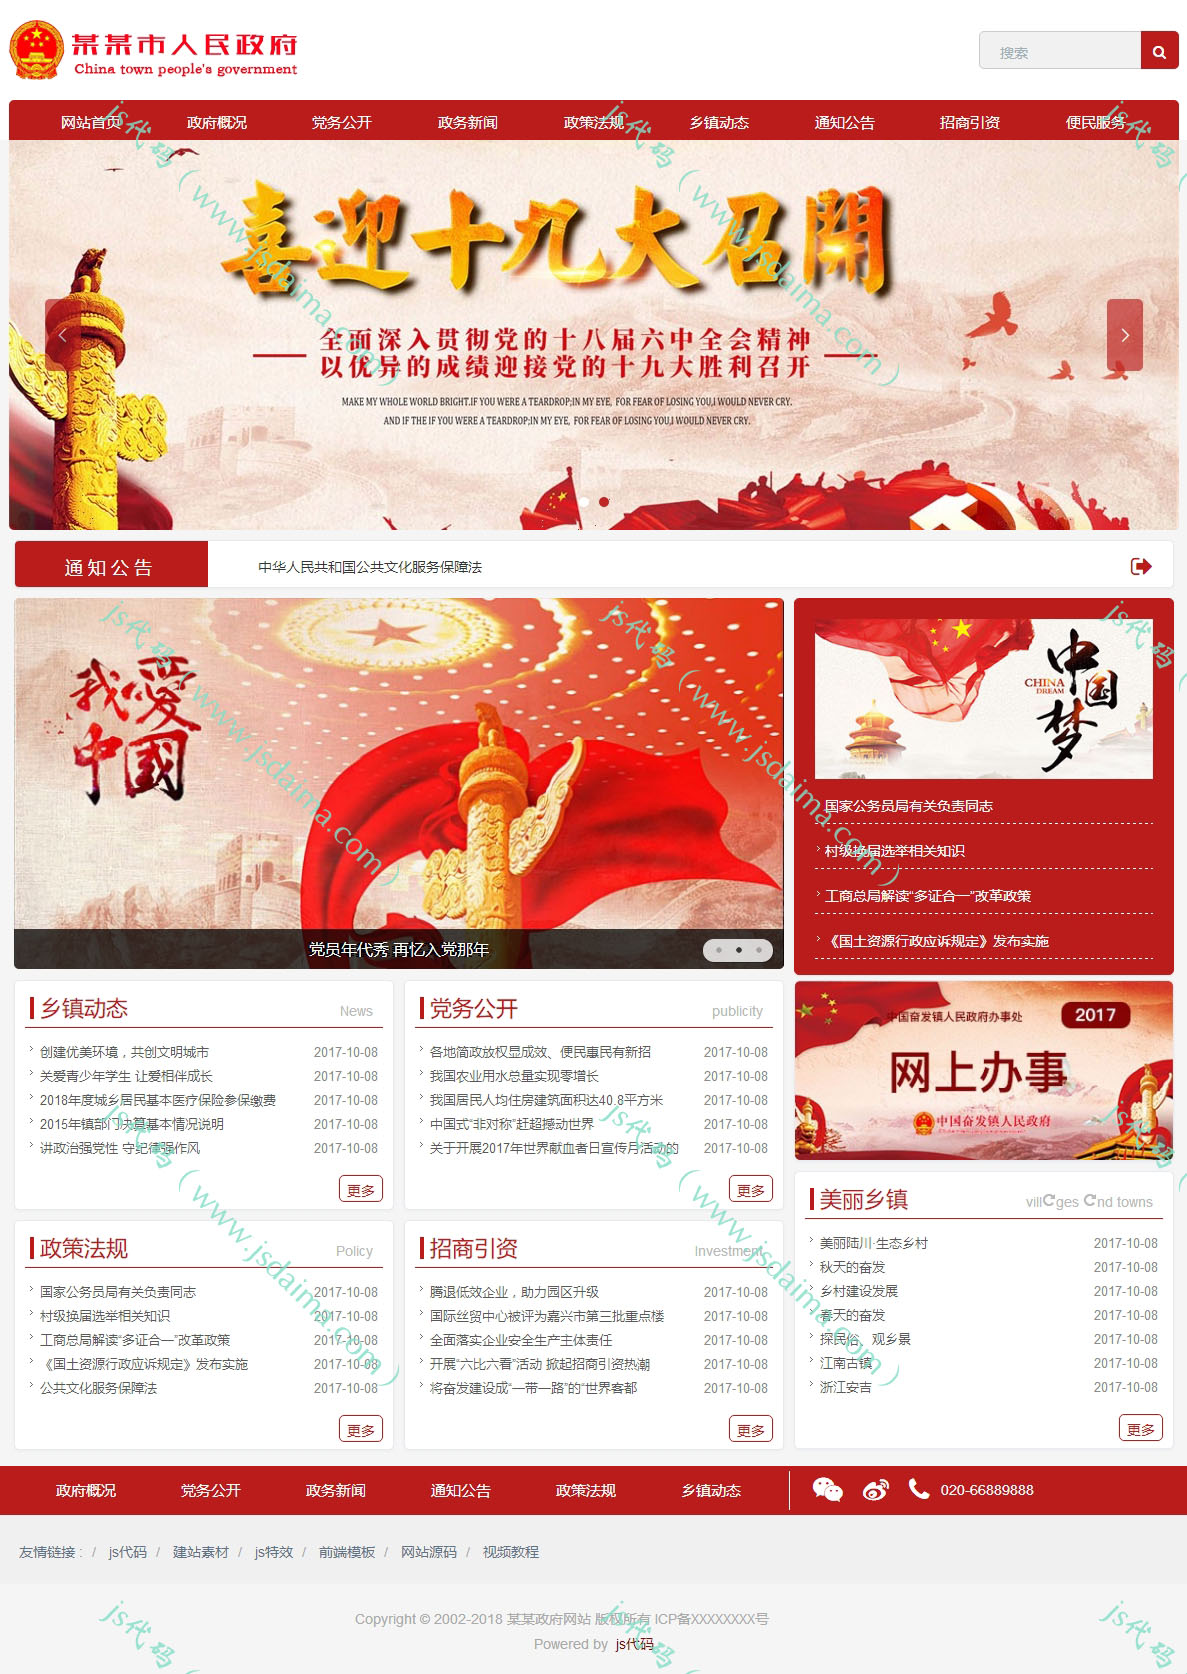 红色大气响应式政府企事业单位网站模板